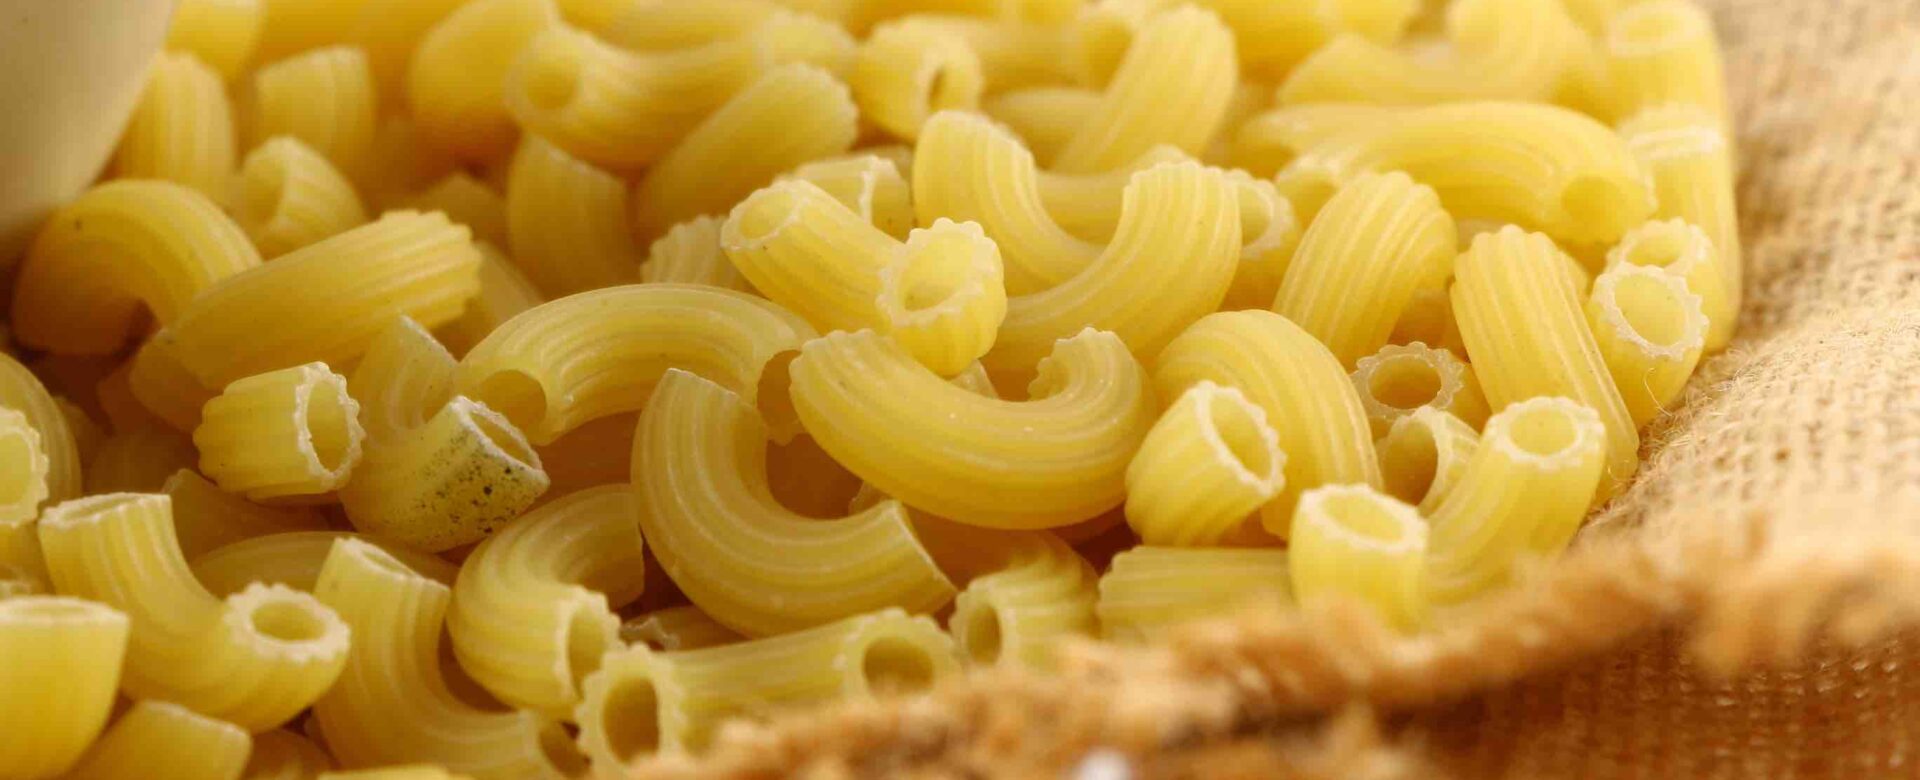 Hoeveel koolhydraten zitten er in macaroni?